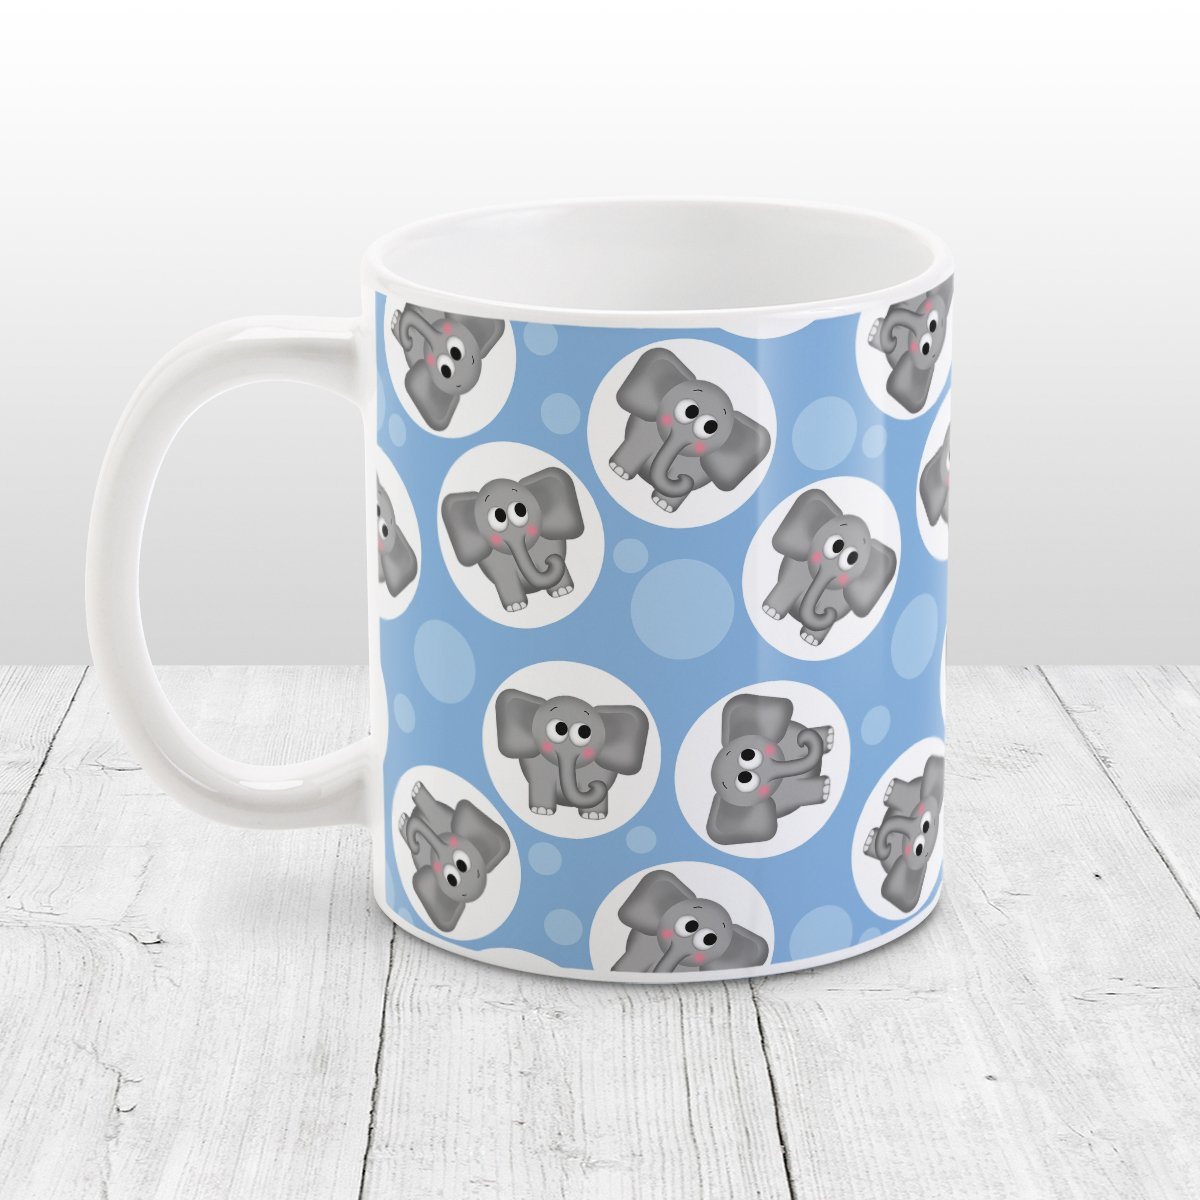 Cute Elephant Pattern Blue Mug at Amy's Coffee Mugs